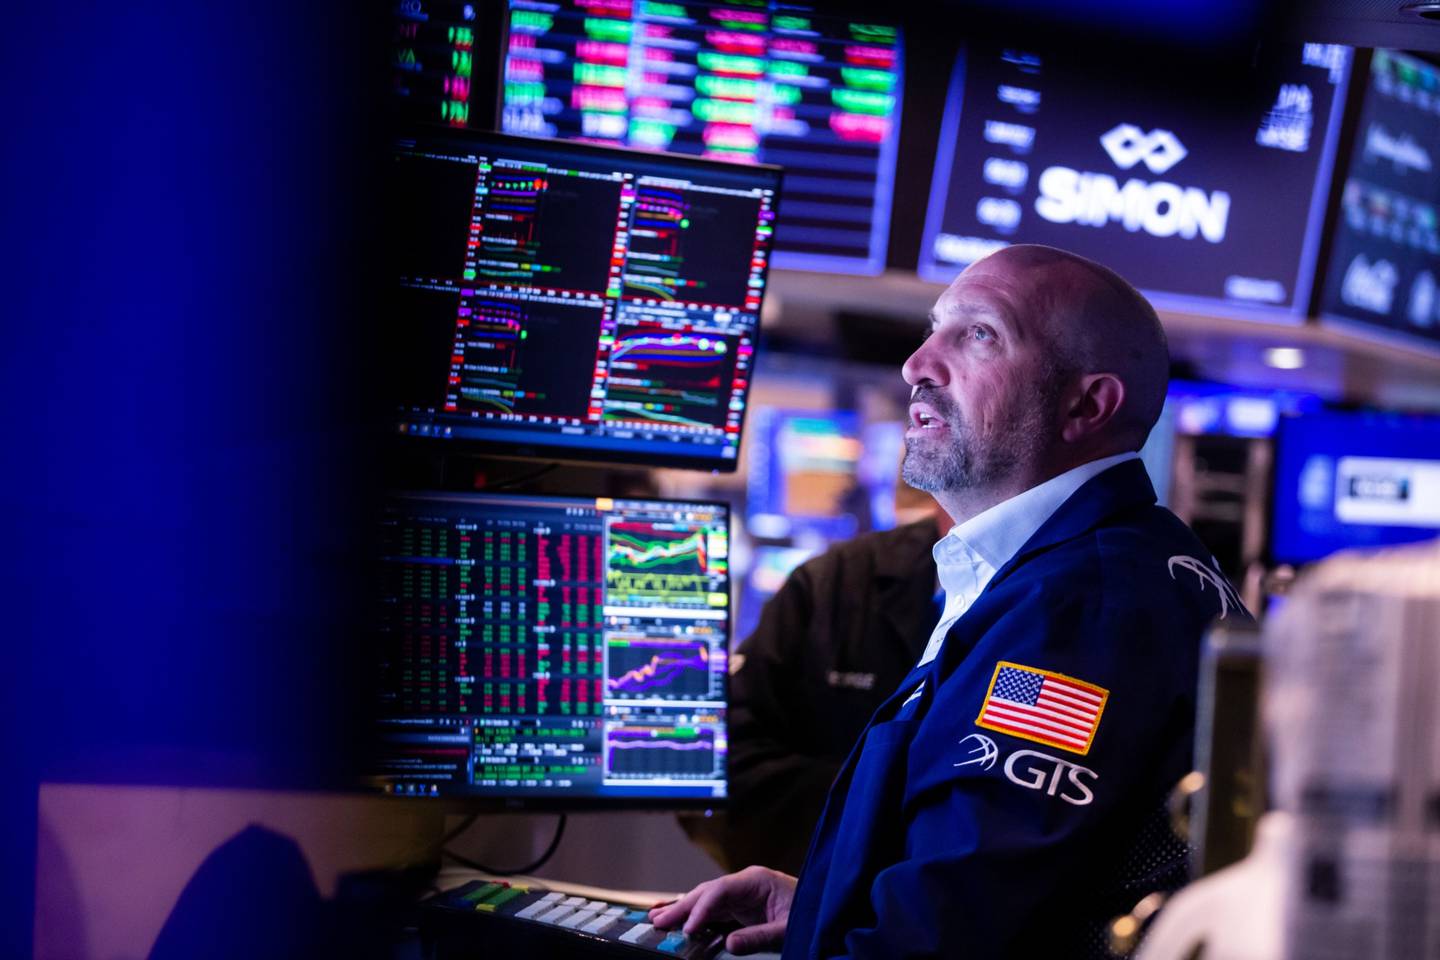 Los analistas prevén un año complejo para las inversiones. Fotógrafo: Michael Nagle/Bloomberg